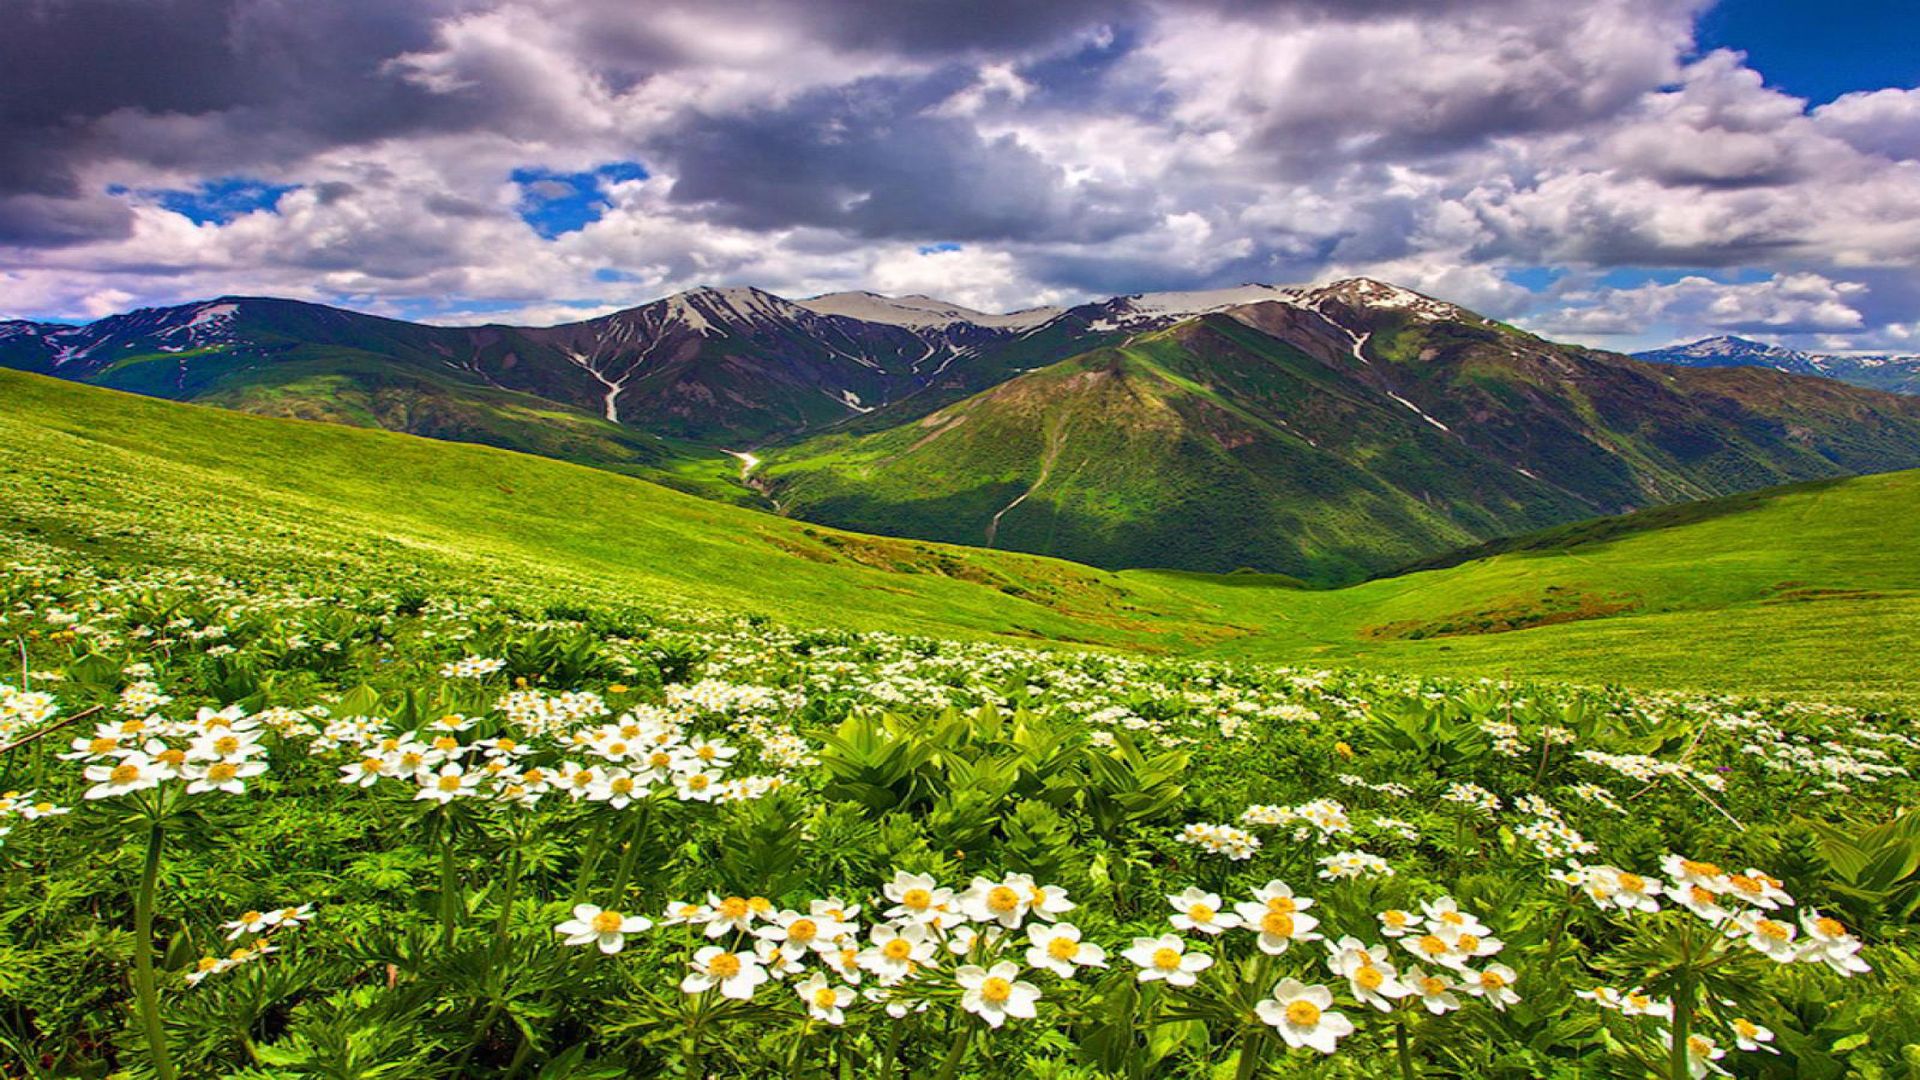 Field Of Flowers In The Mountain Summer Sky HD Wallpaper 10981